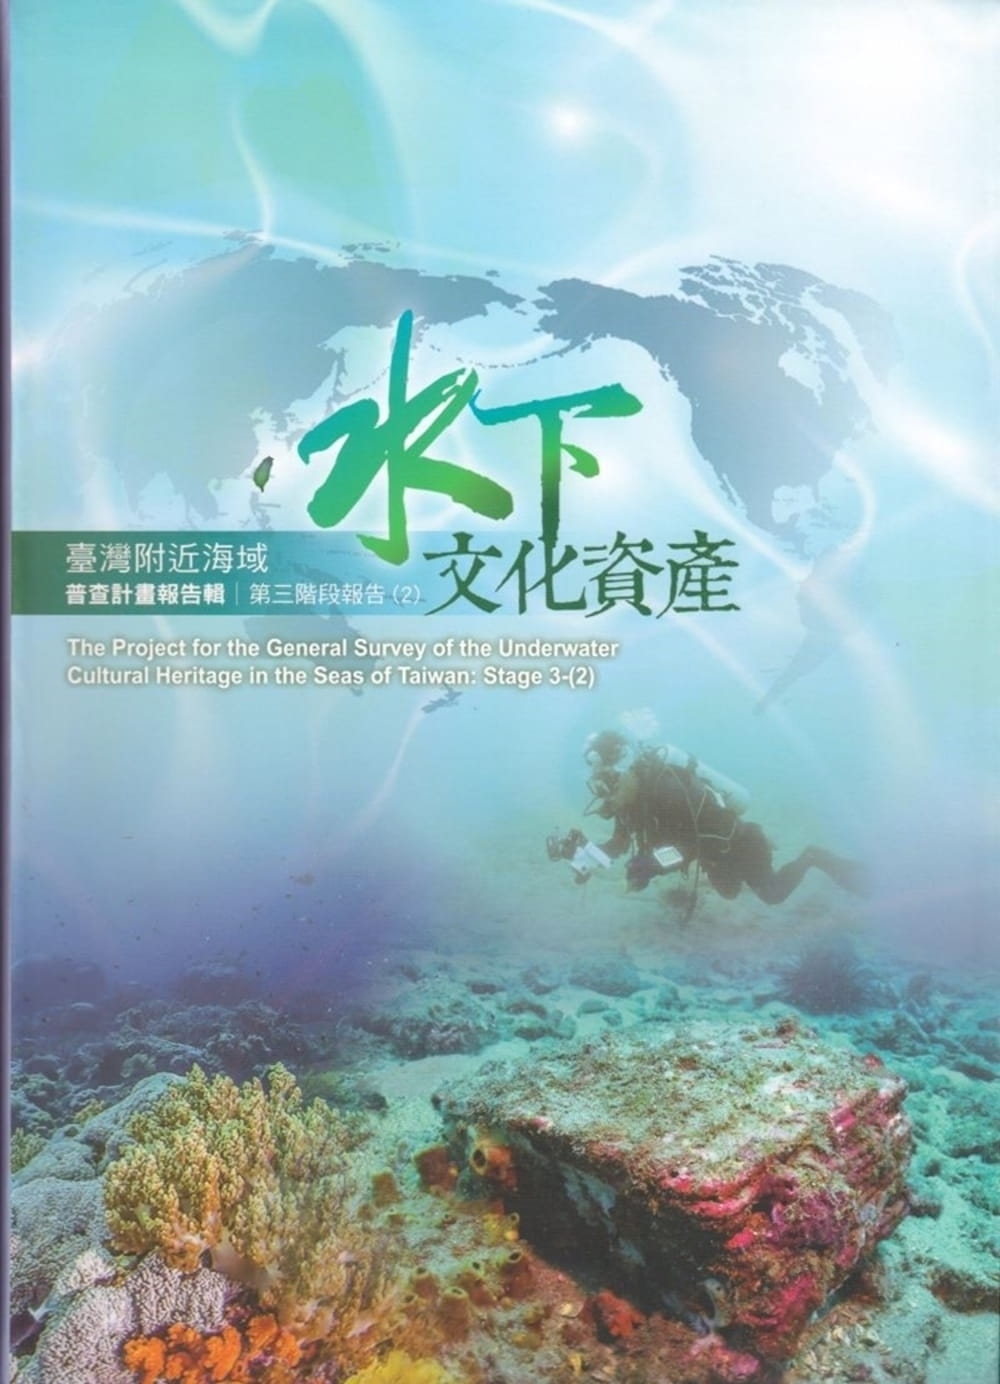 臺灣附近海域水下文化資產普查計畫報告輯第三階段報告(2)